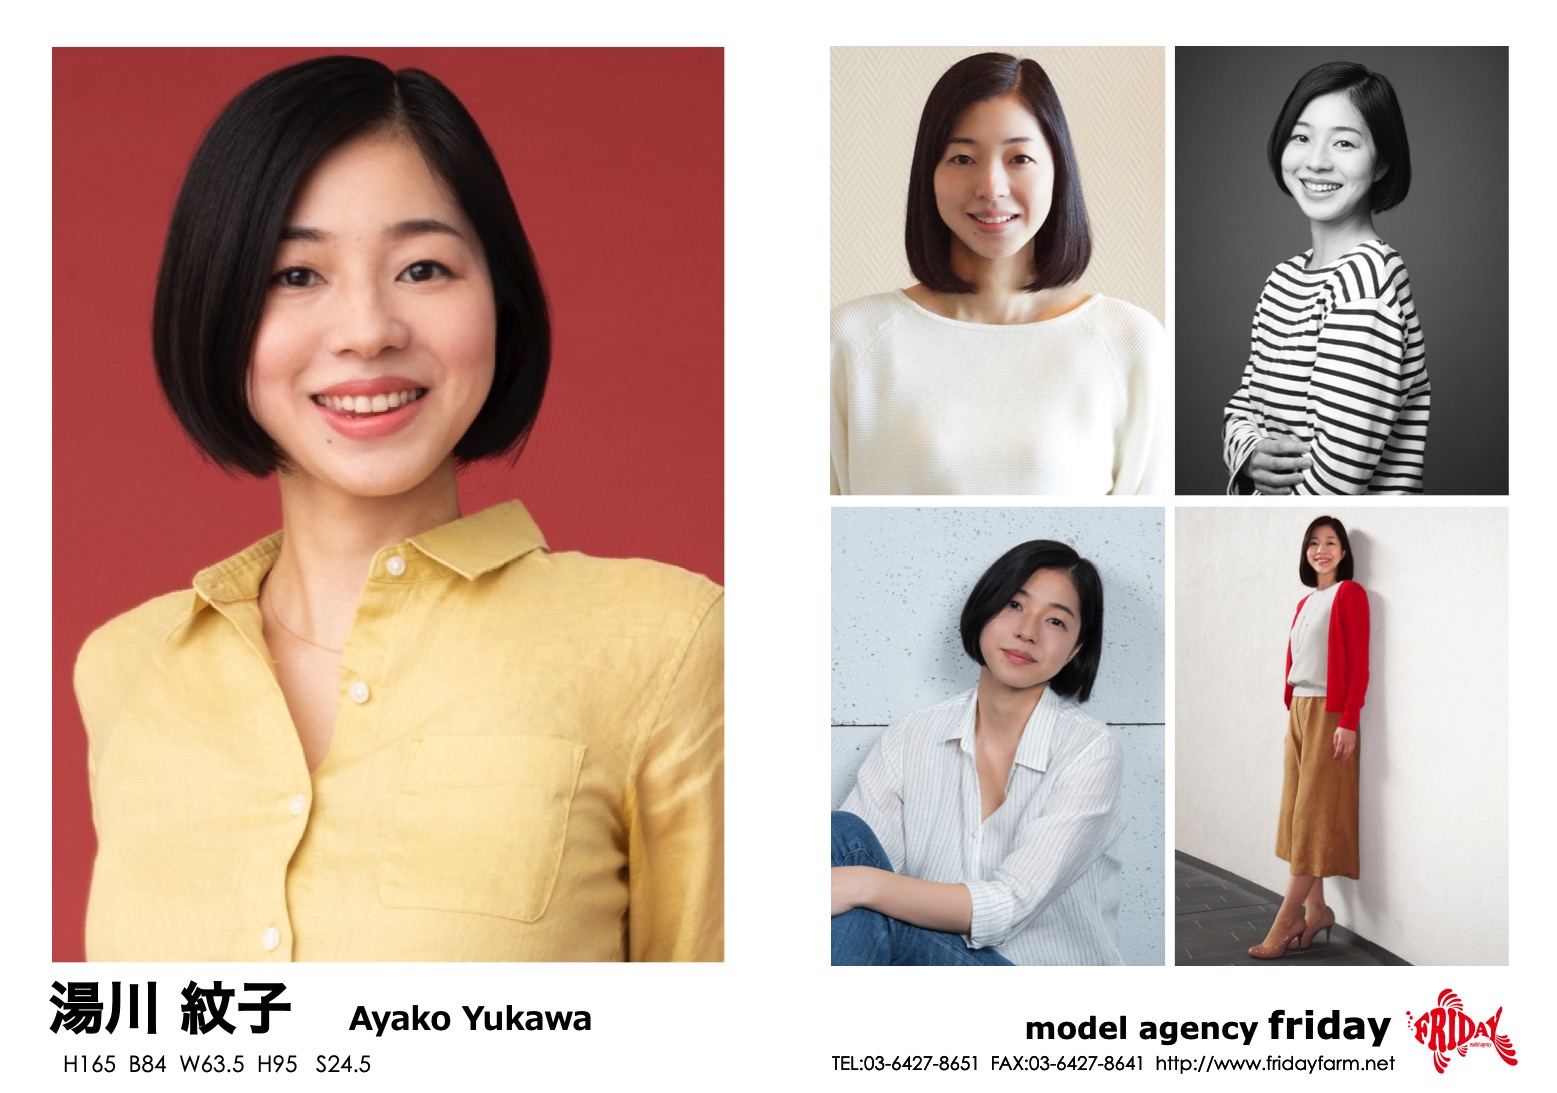 湯川 紋子 - Ayako Yukawa | model agency friday